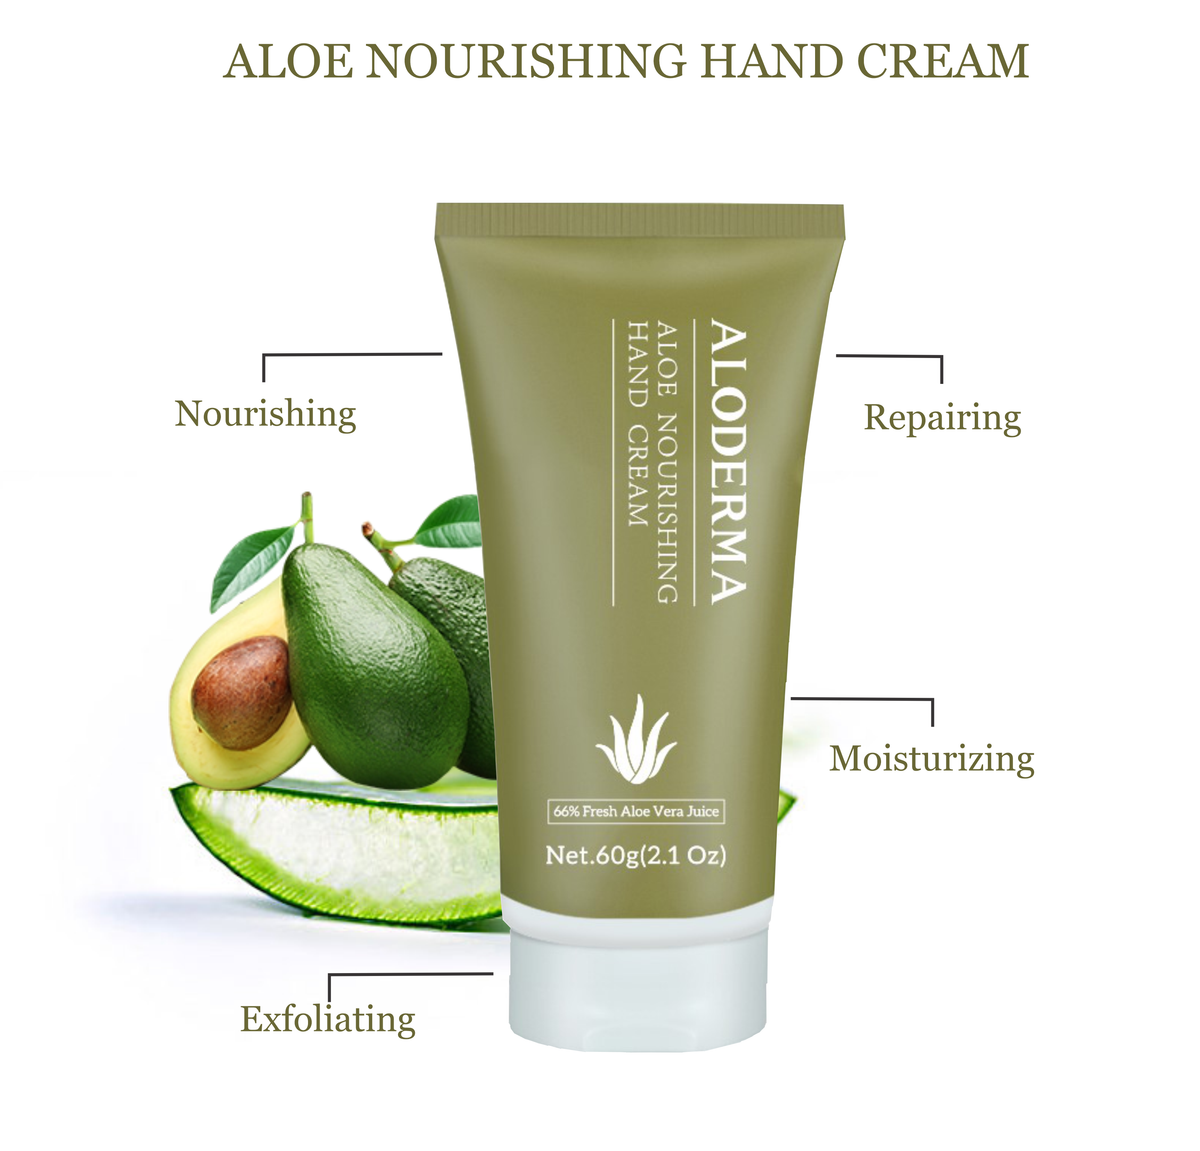 ALODERMA Aloe Nourishing Hand Cream